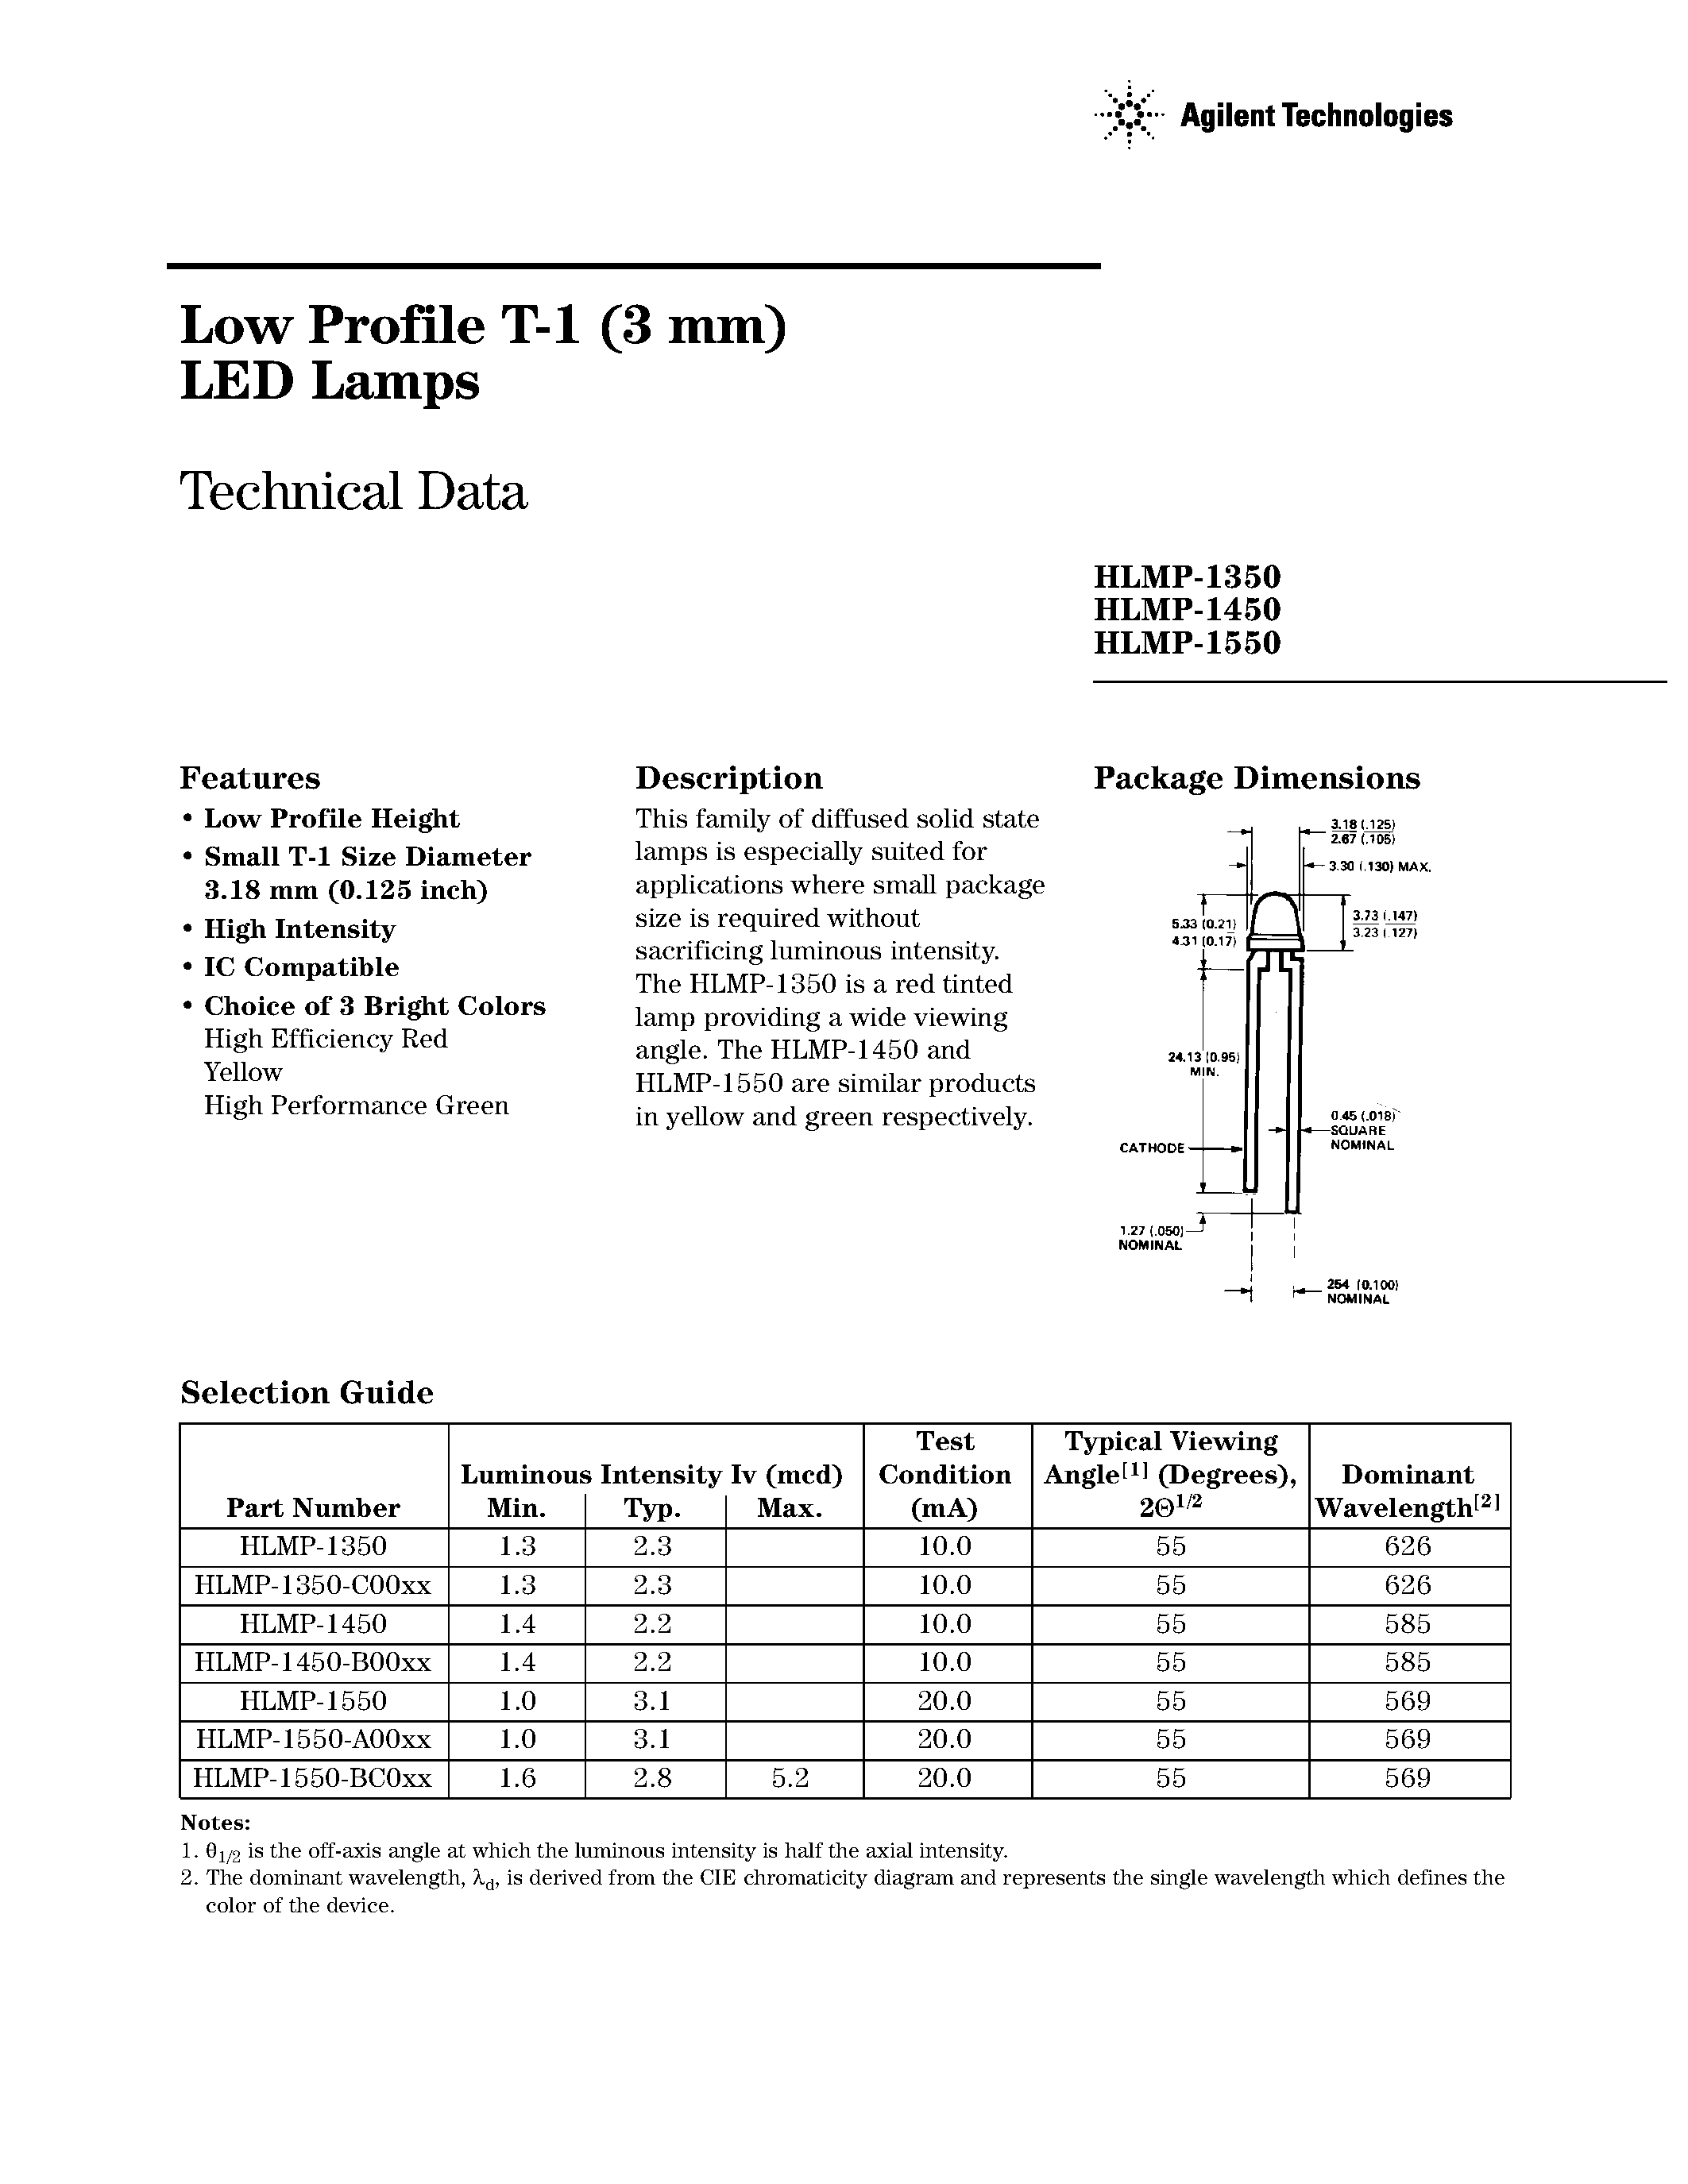 Даташит HLMP-1250 - (HLMP-1x50) Low Profile T-1 (3 mm) LED Lamps страница 1